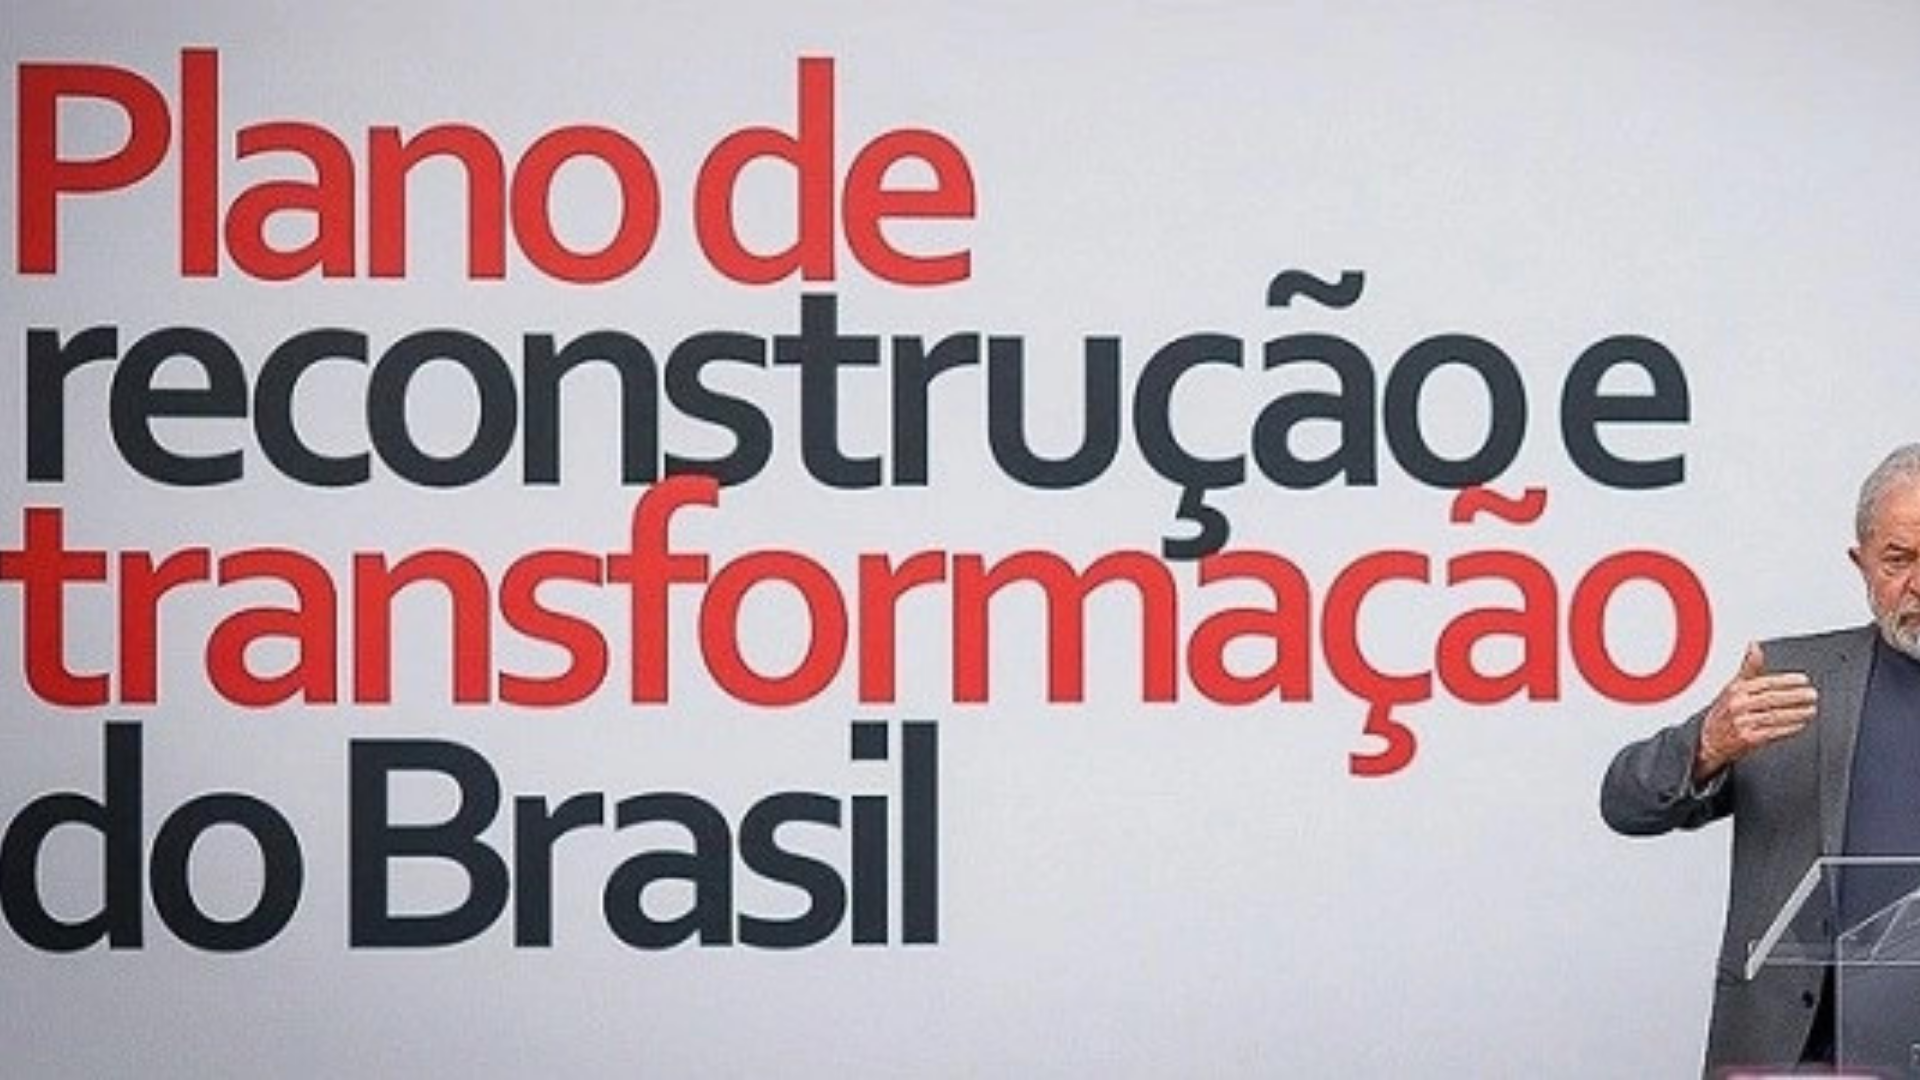 A eleição de outubro no Brasil e a urgência da reconstrução nacional. Foto de Lula ao lado de um letreiro com a logo de cmapanha, escrito "Plano de reconstrução e transformação do Brasil".